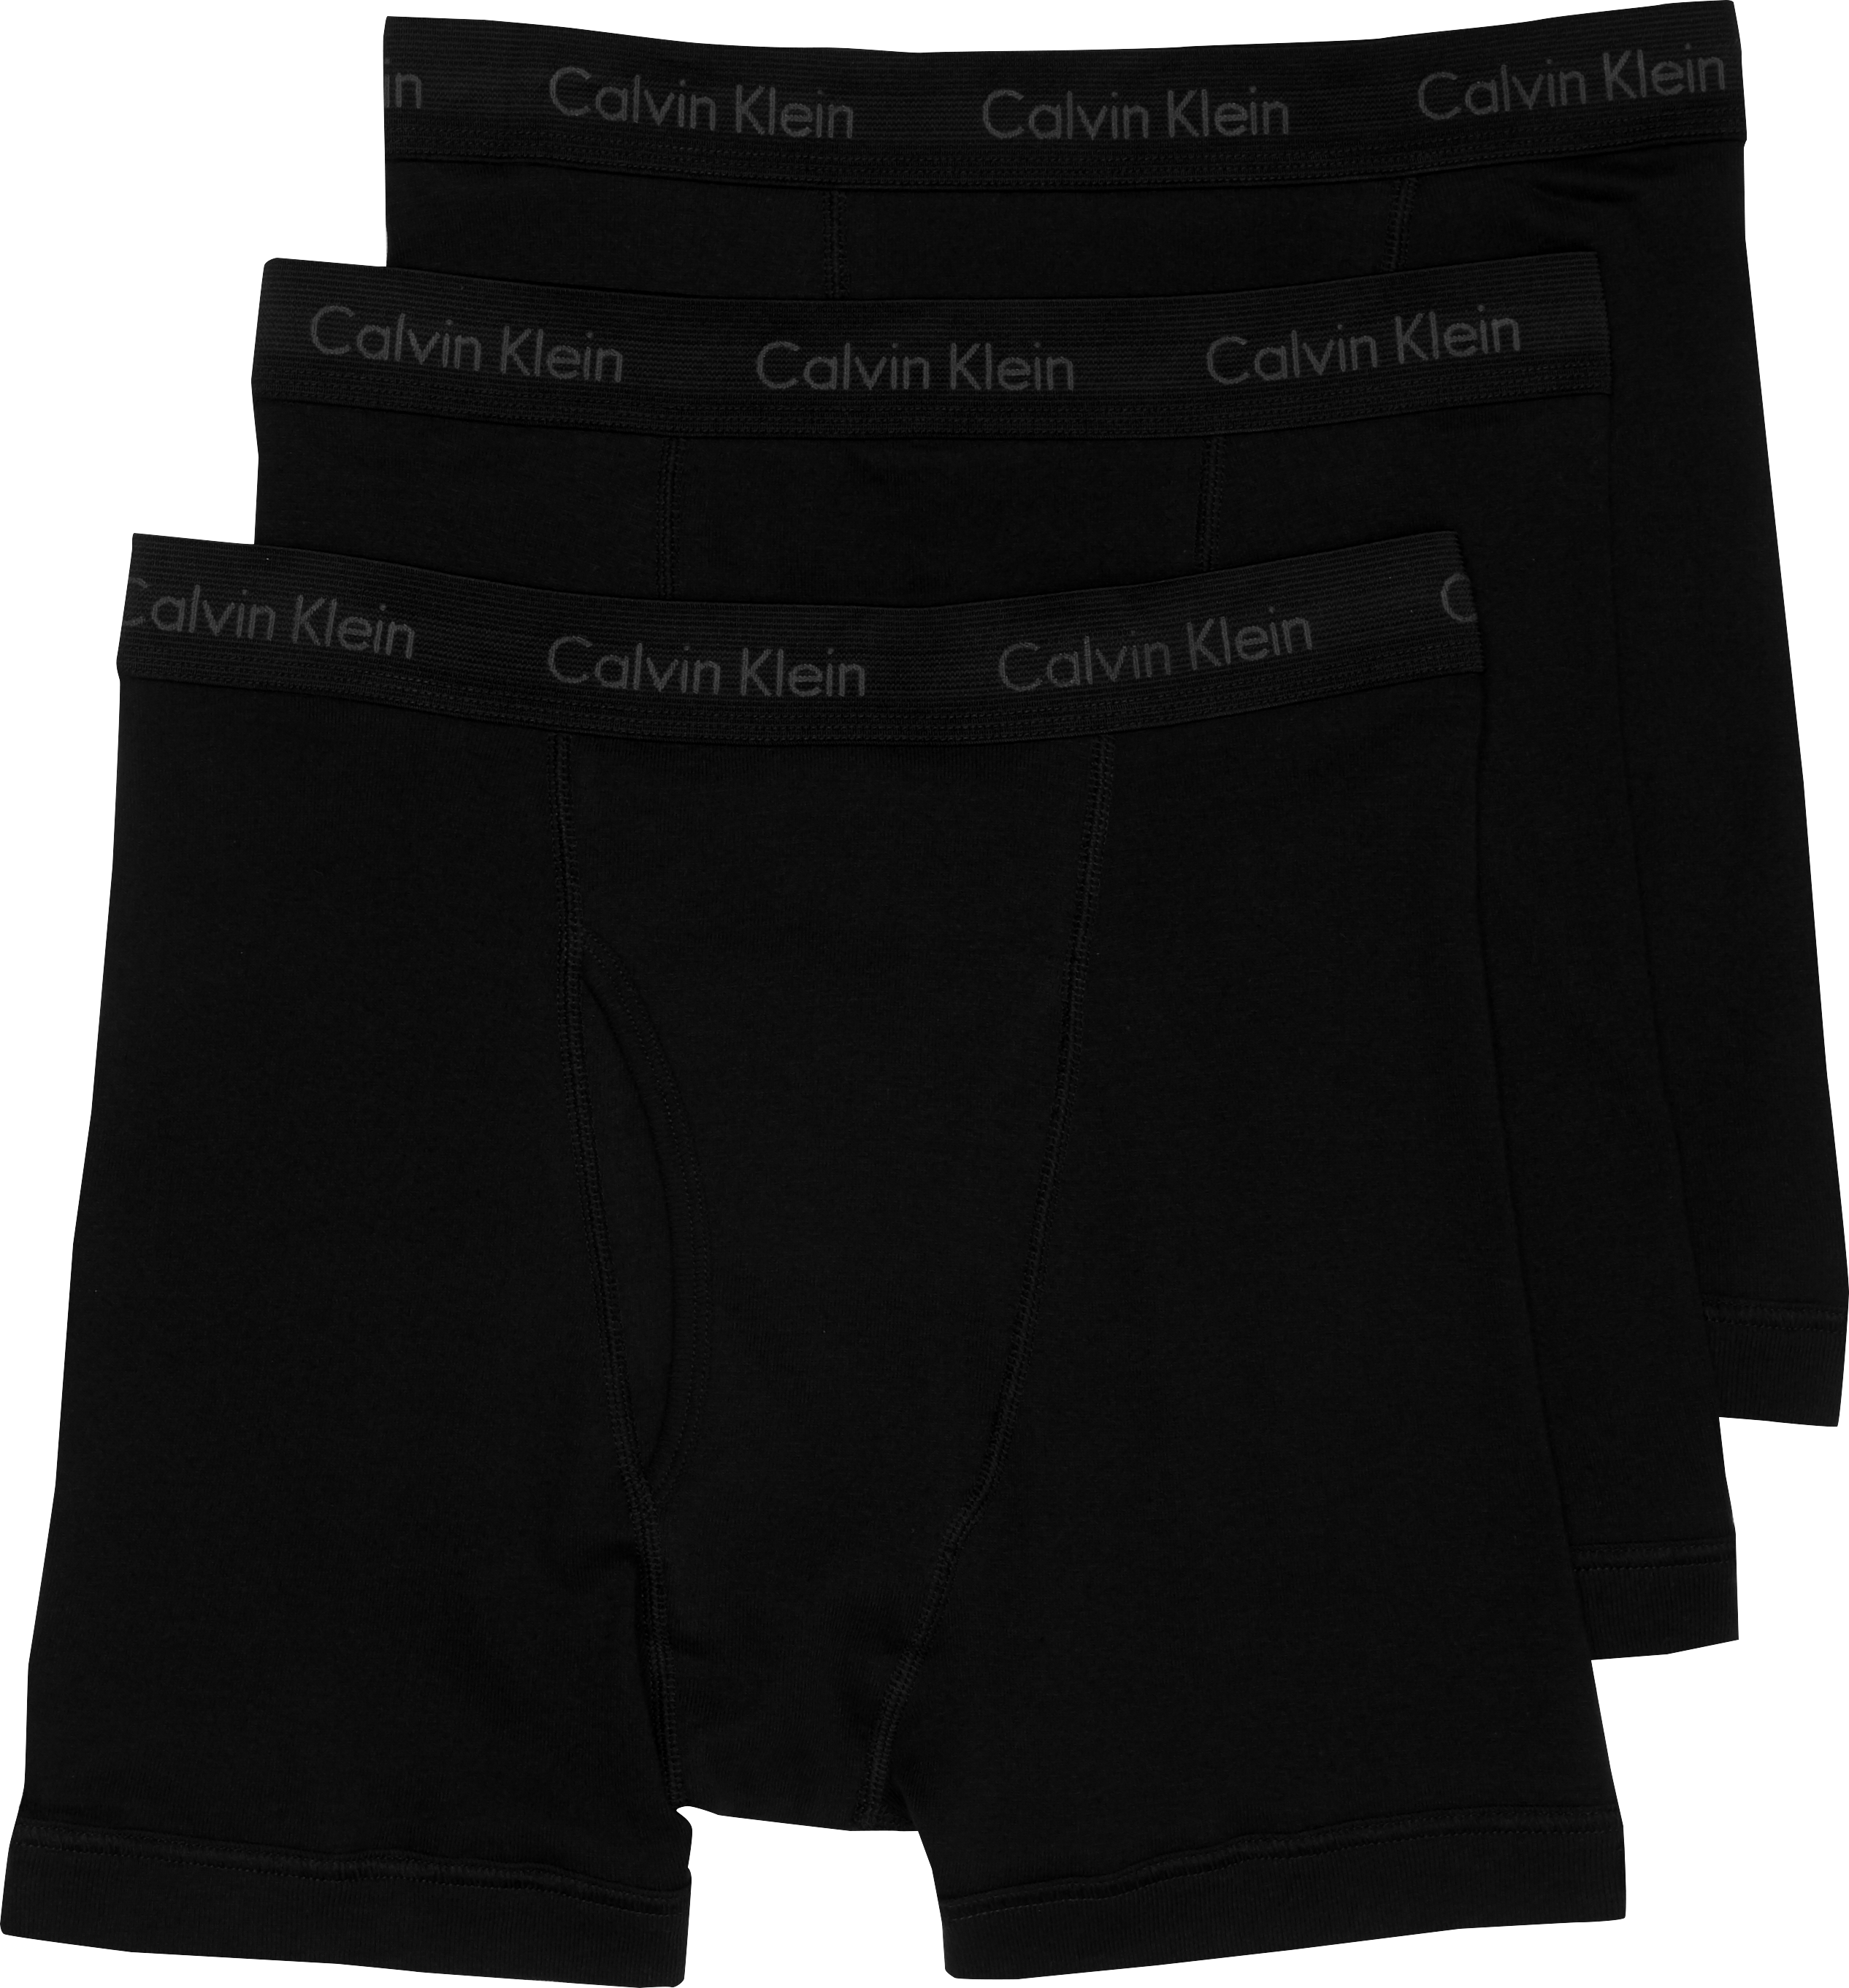 calvin klein black boxer